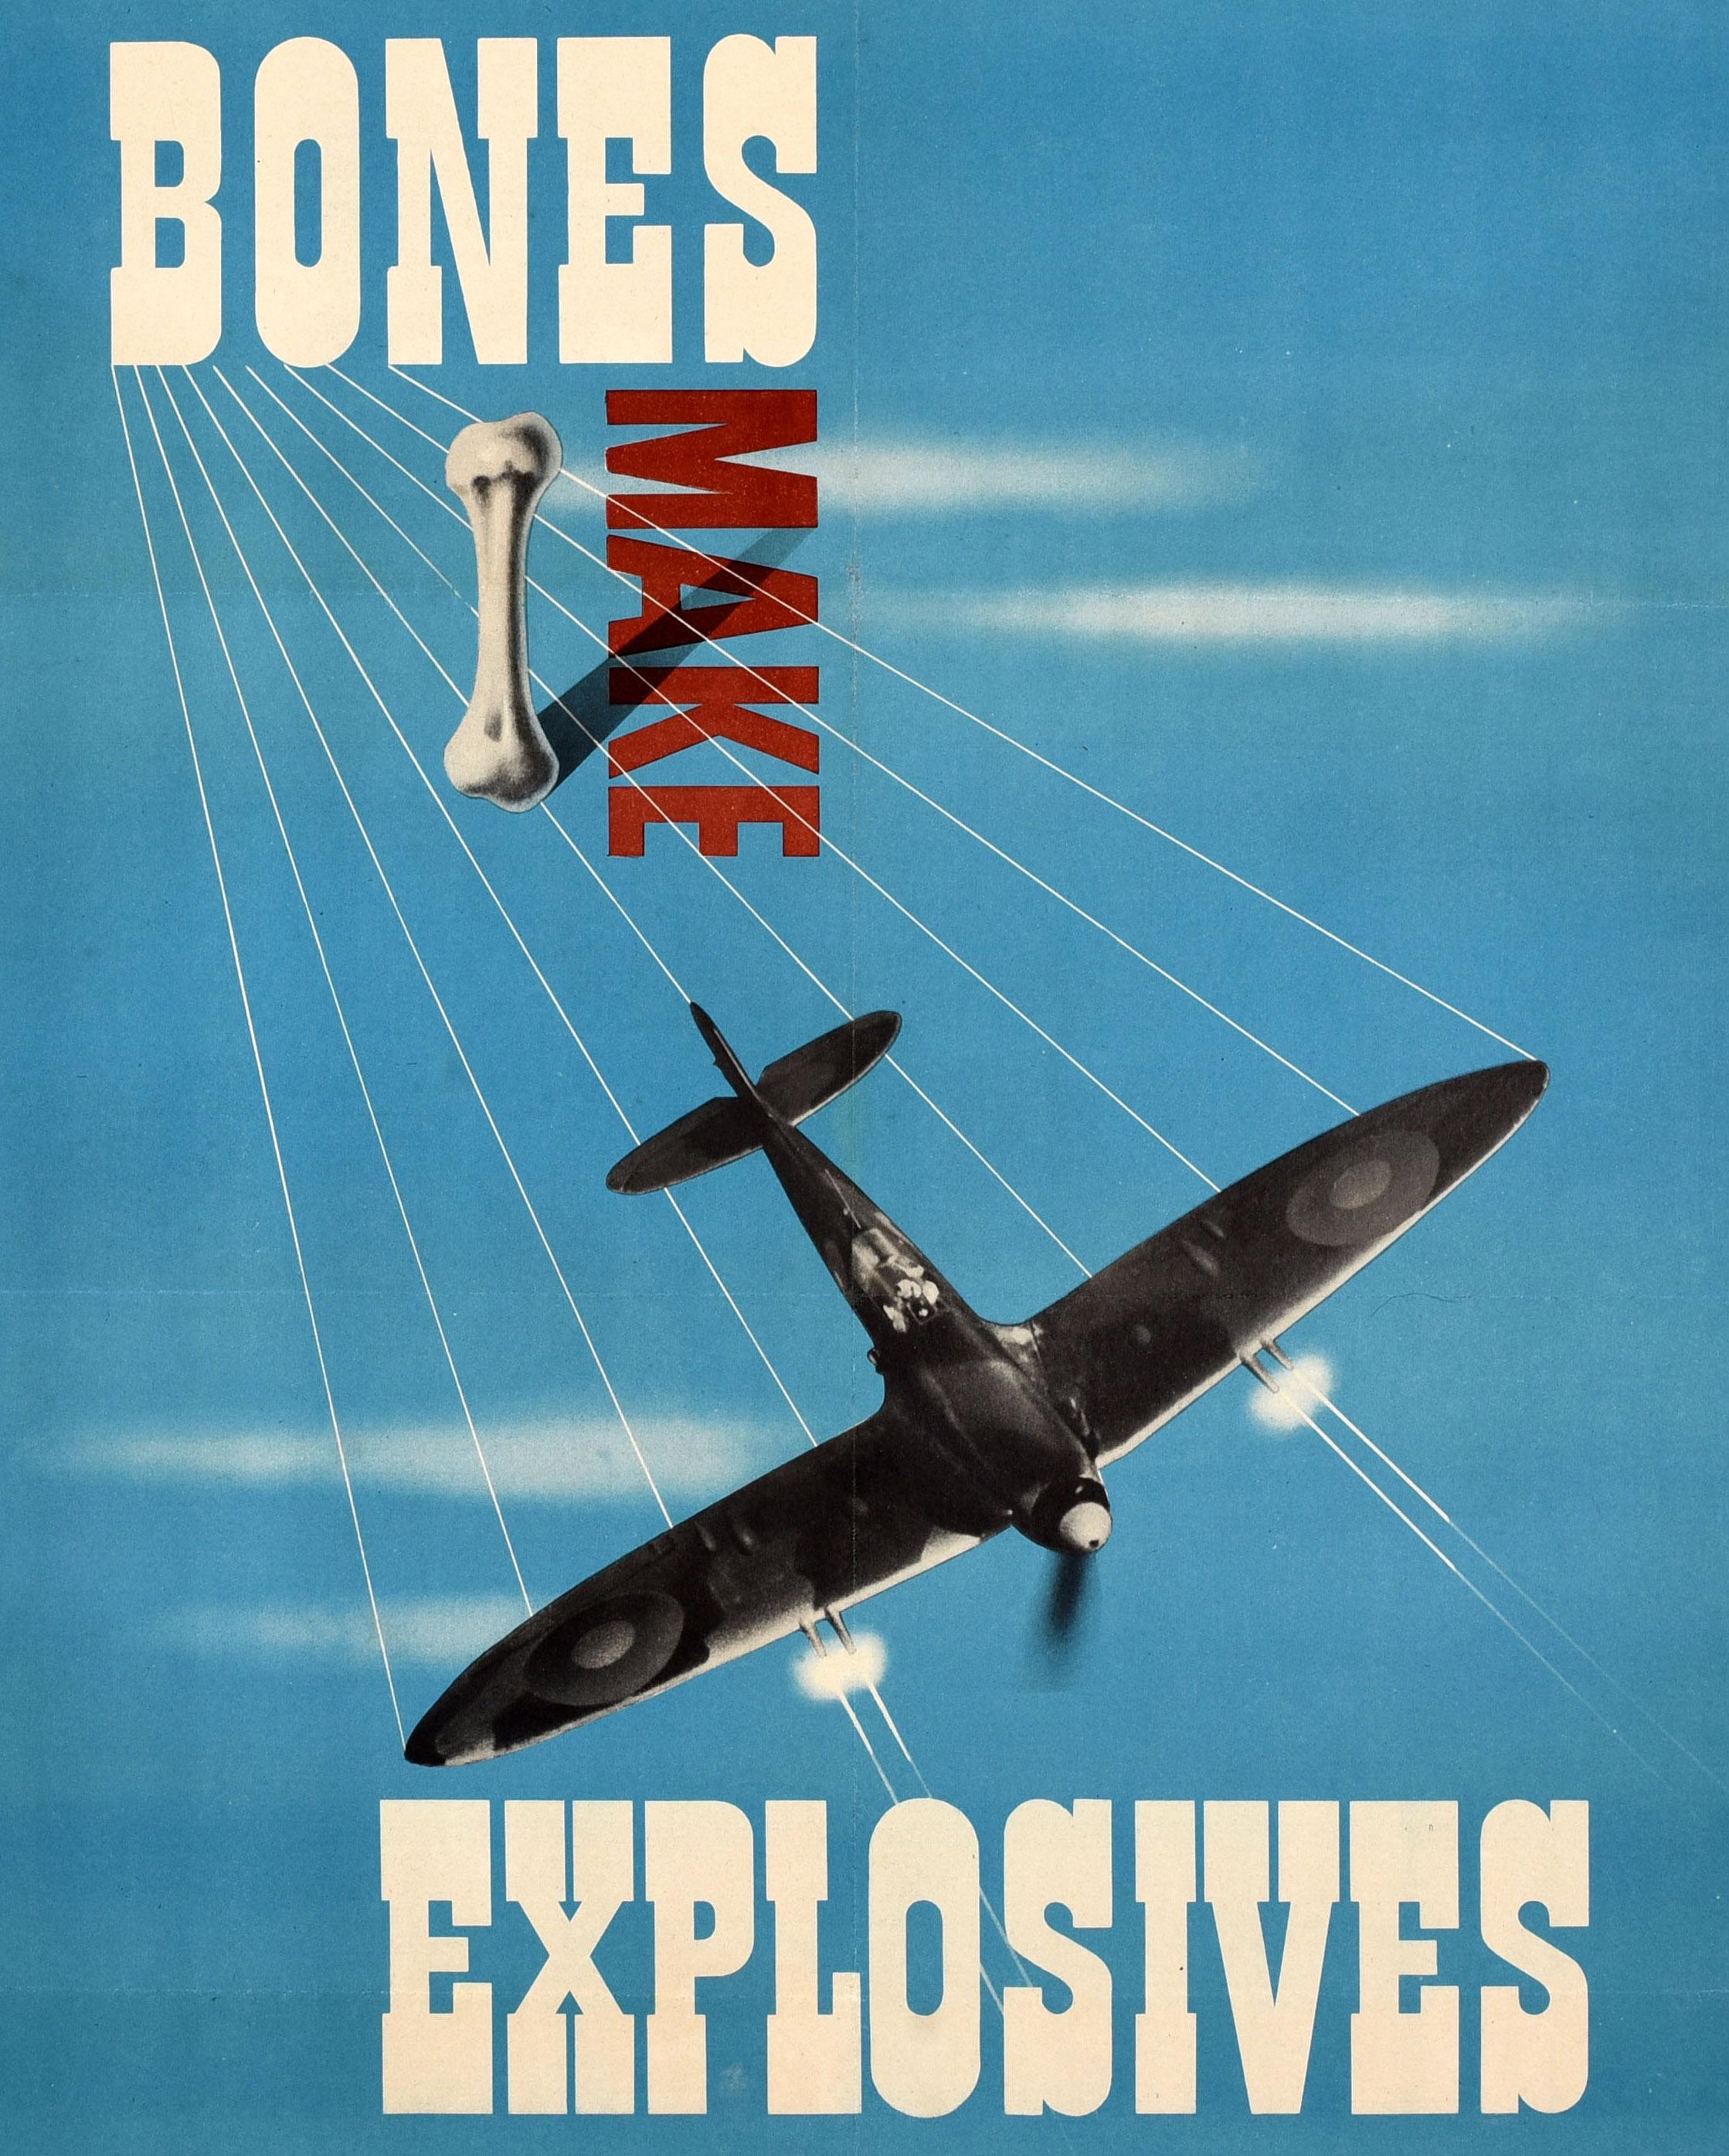 Original Vintage War Home Front Recycling Poster Bones Make Explosives WWII - Print by Reginald Mount